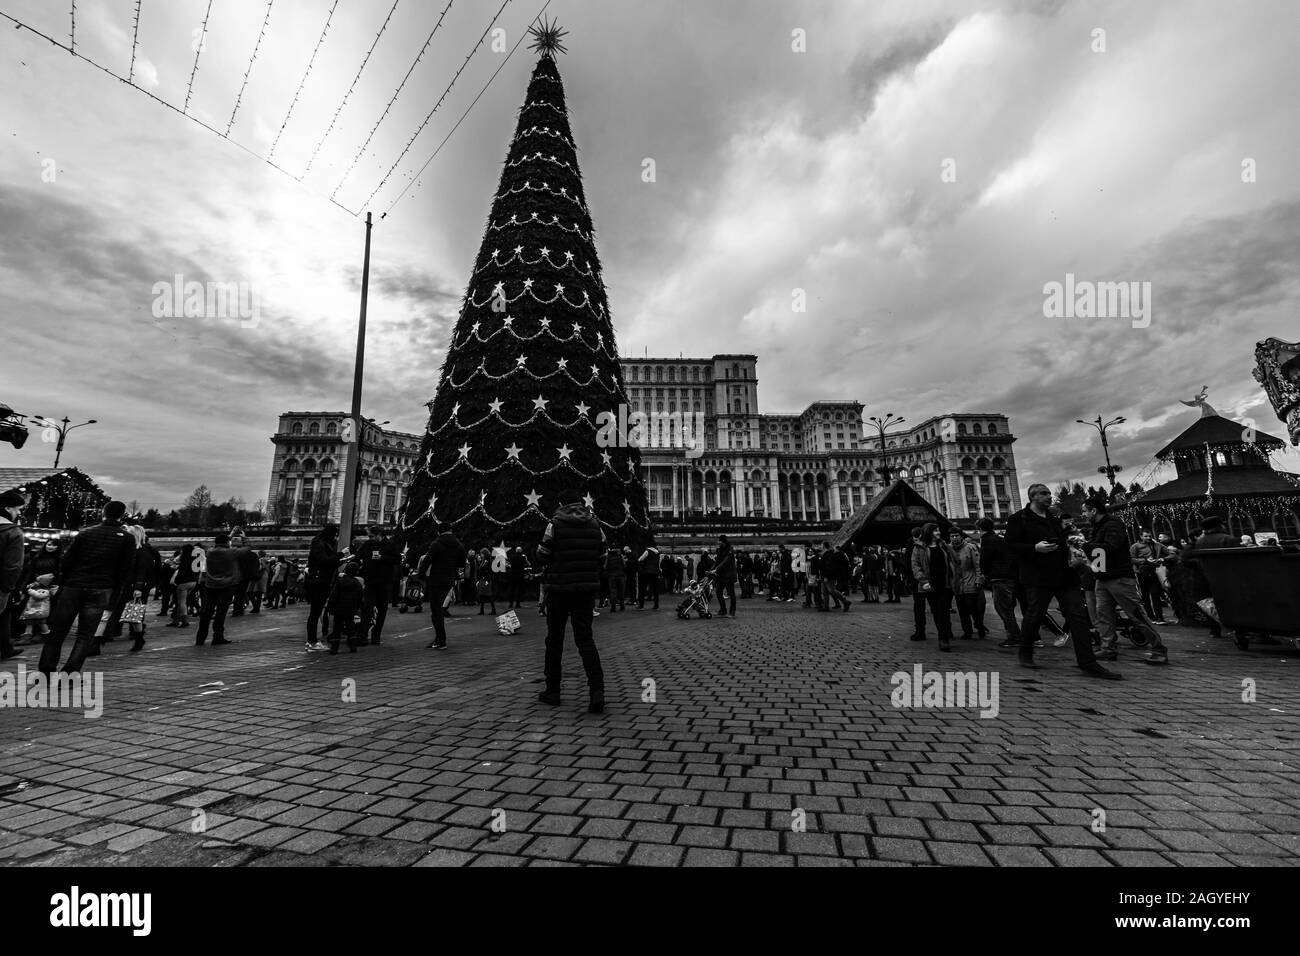 Bucarest Il Mercatino di Natale di fronte al Palazzo del Parlamento, l'albero di Natale, luci, persone vagare al mercatino di Natale di Bucarest, Romani Foto Stock